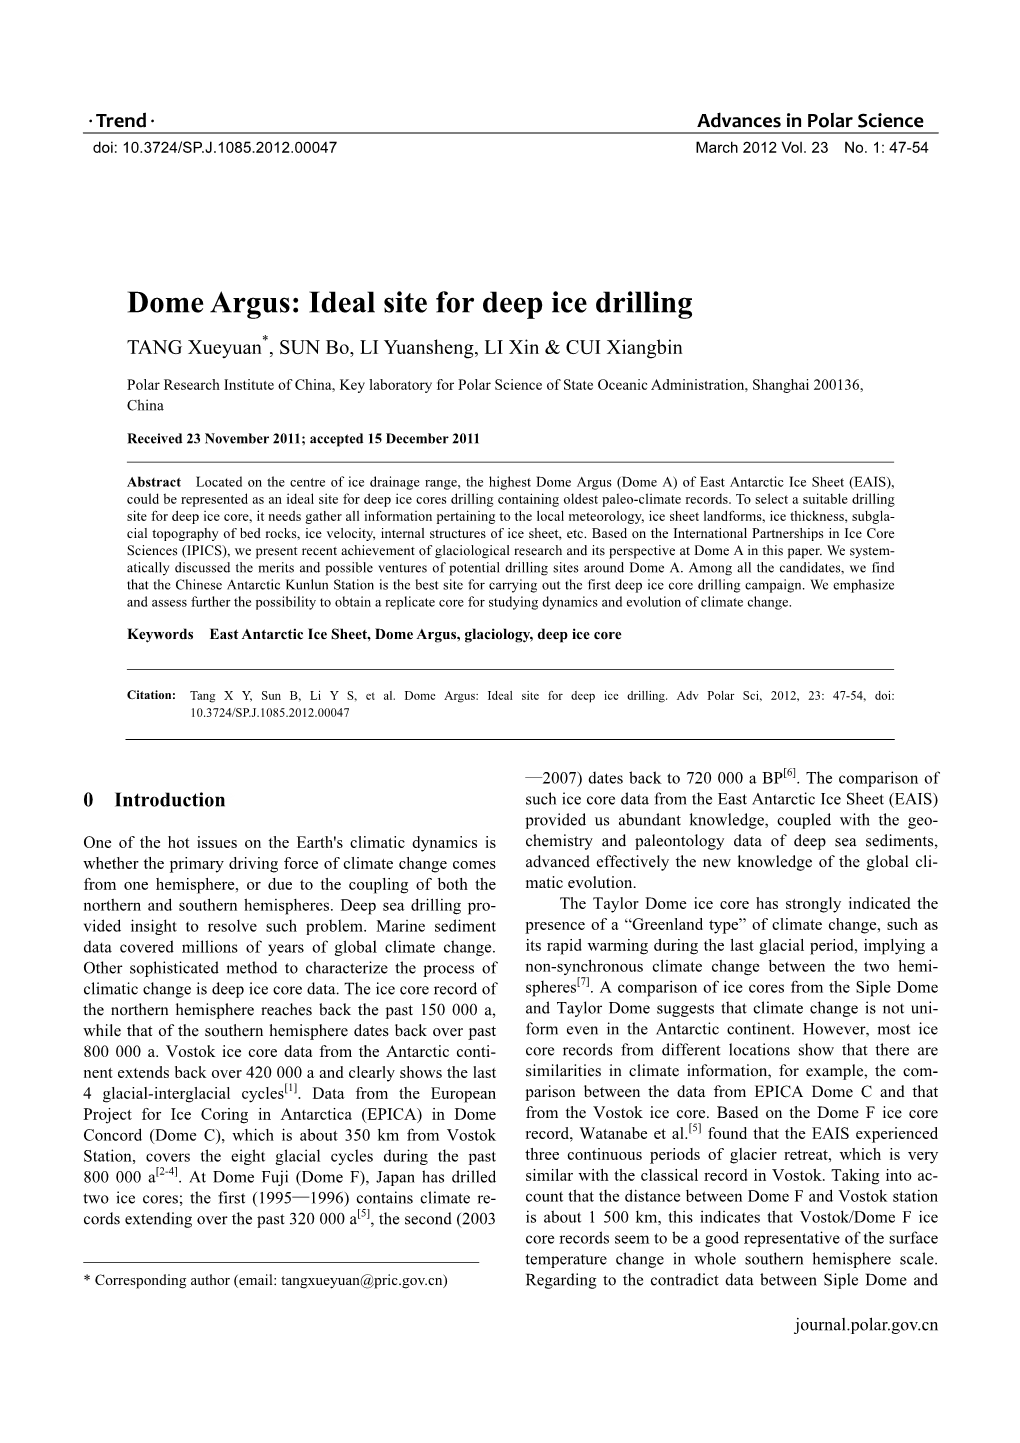 Dome Argus: Ideal Site for Deep Ice Drilling * TANG Xueyuan , SUN Bo, LI Yuansheng, LI Xin & CUI Xiangbin